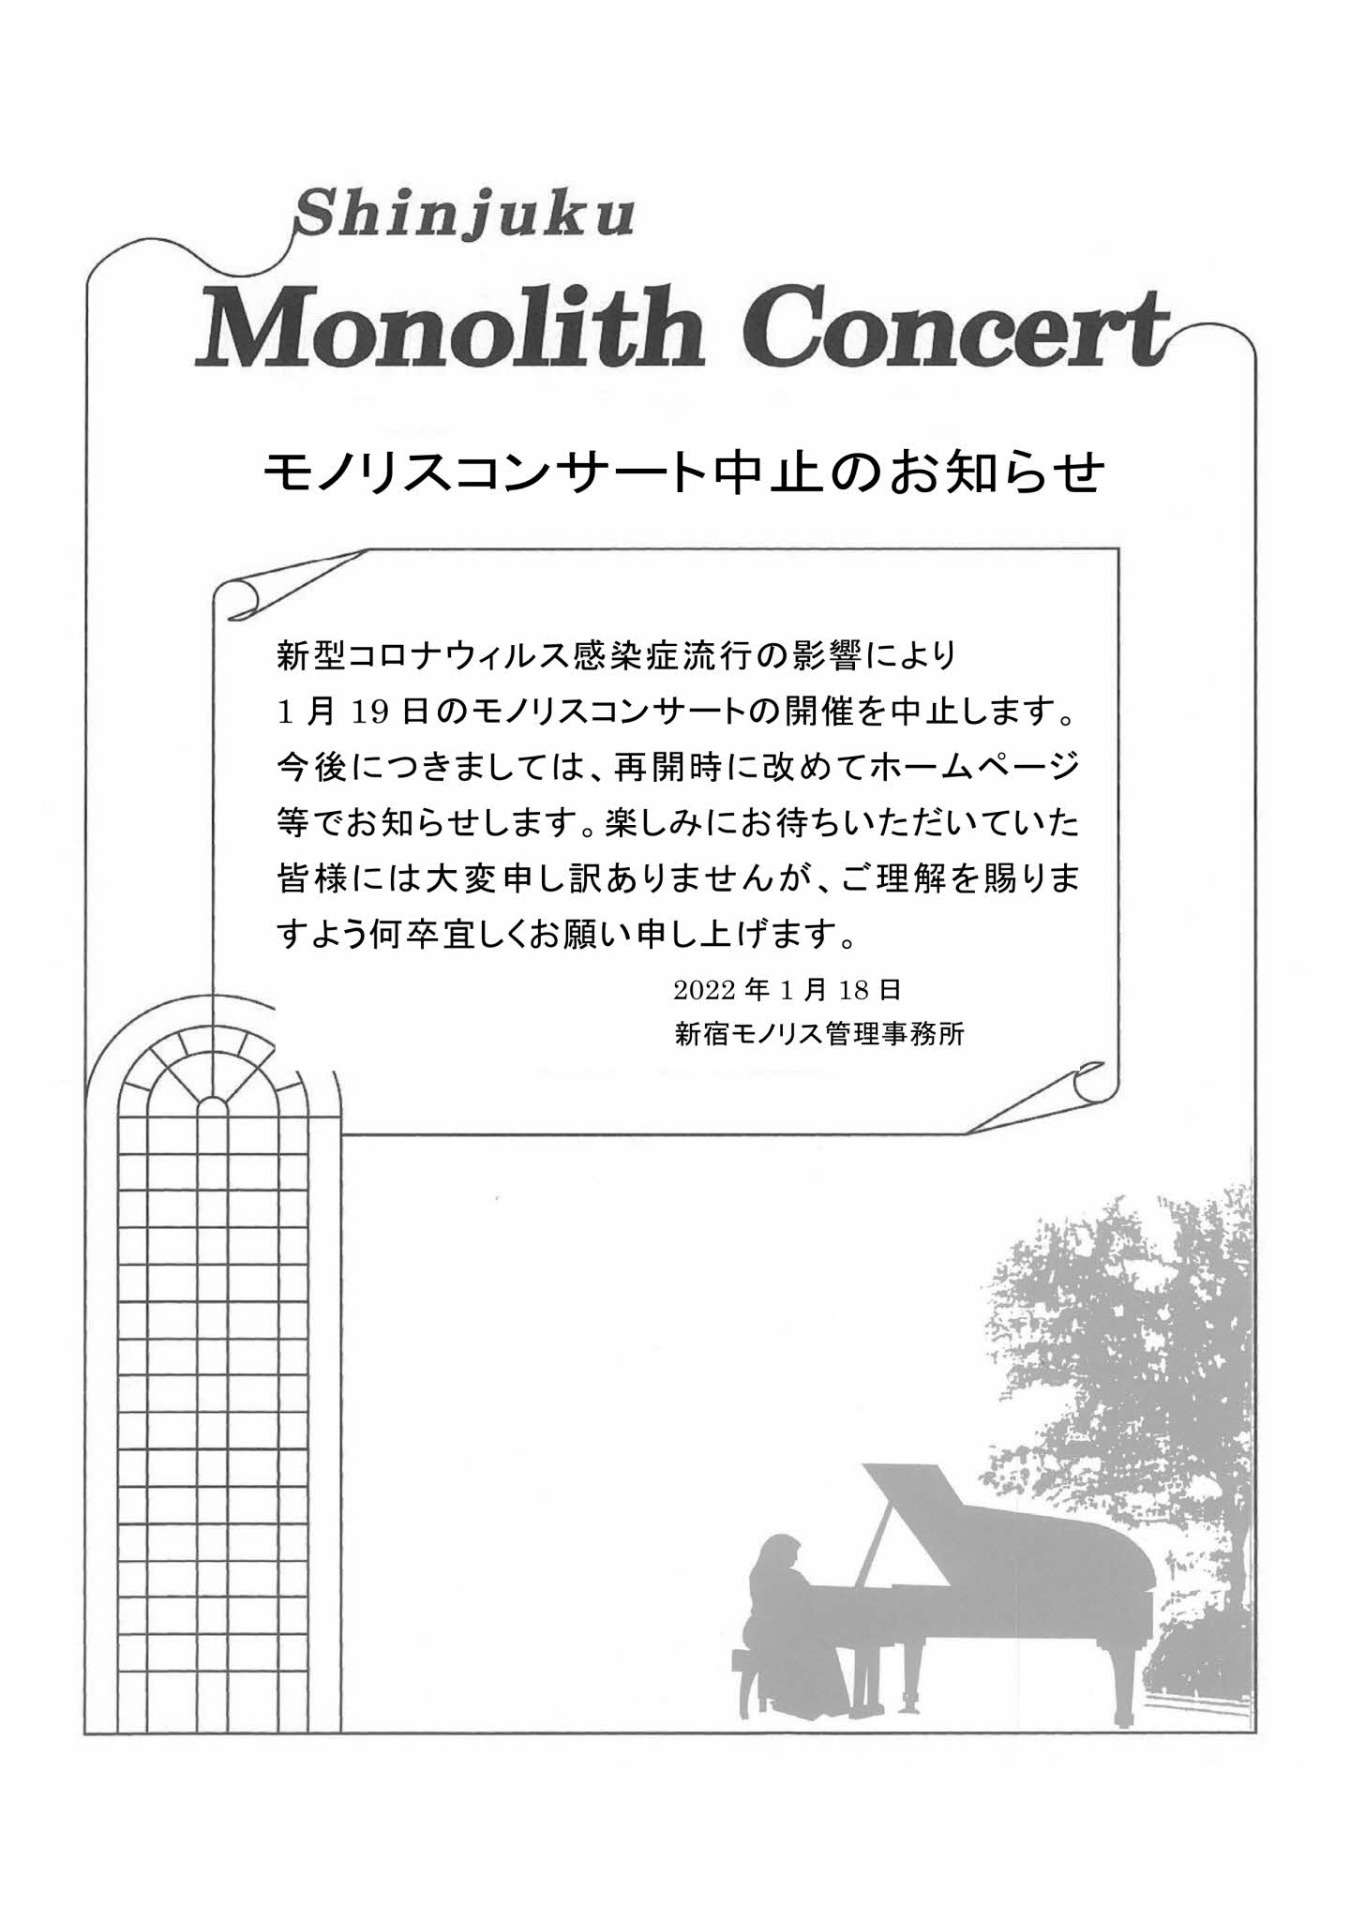 【急告】モノリスコンサート中止のお知らせ